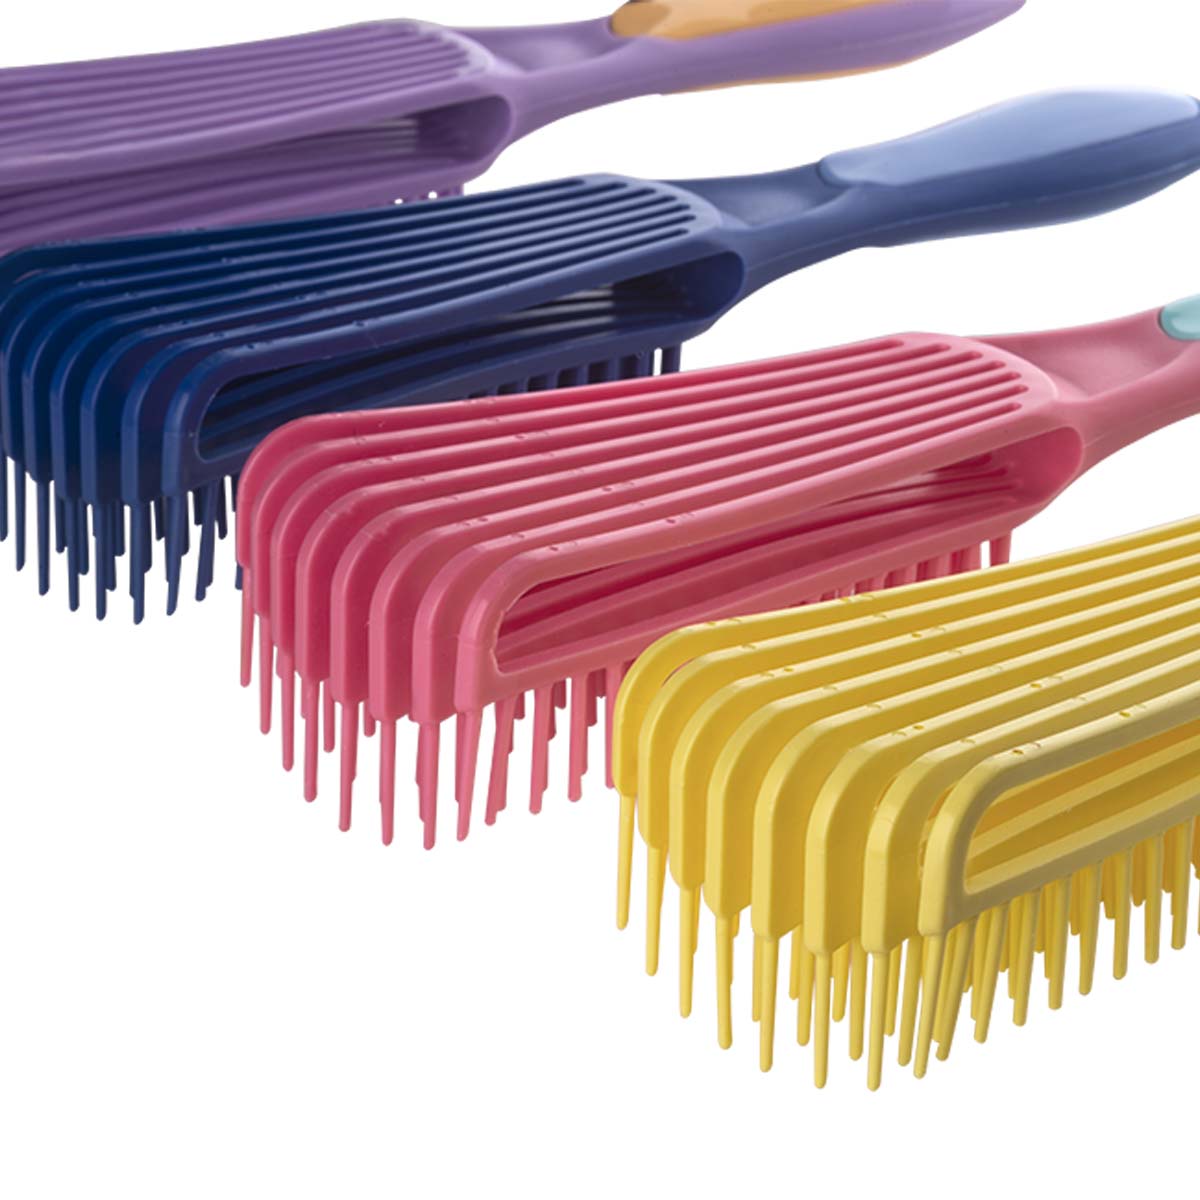 Cepillo Dompel Caracol, especialmente desarrollado para la rutina de cepillado de rizos, cepillo antiestático con cerdas ligeras, suaves y flexibles. 4 piezas (amarillo, rosa, morado, azul) - depilcompany